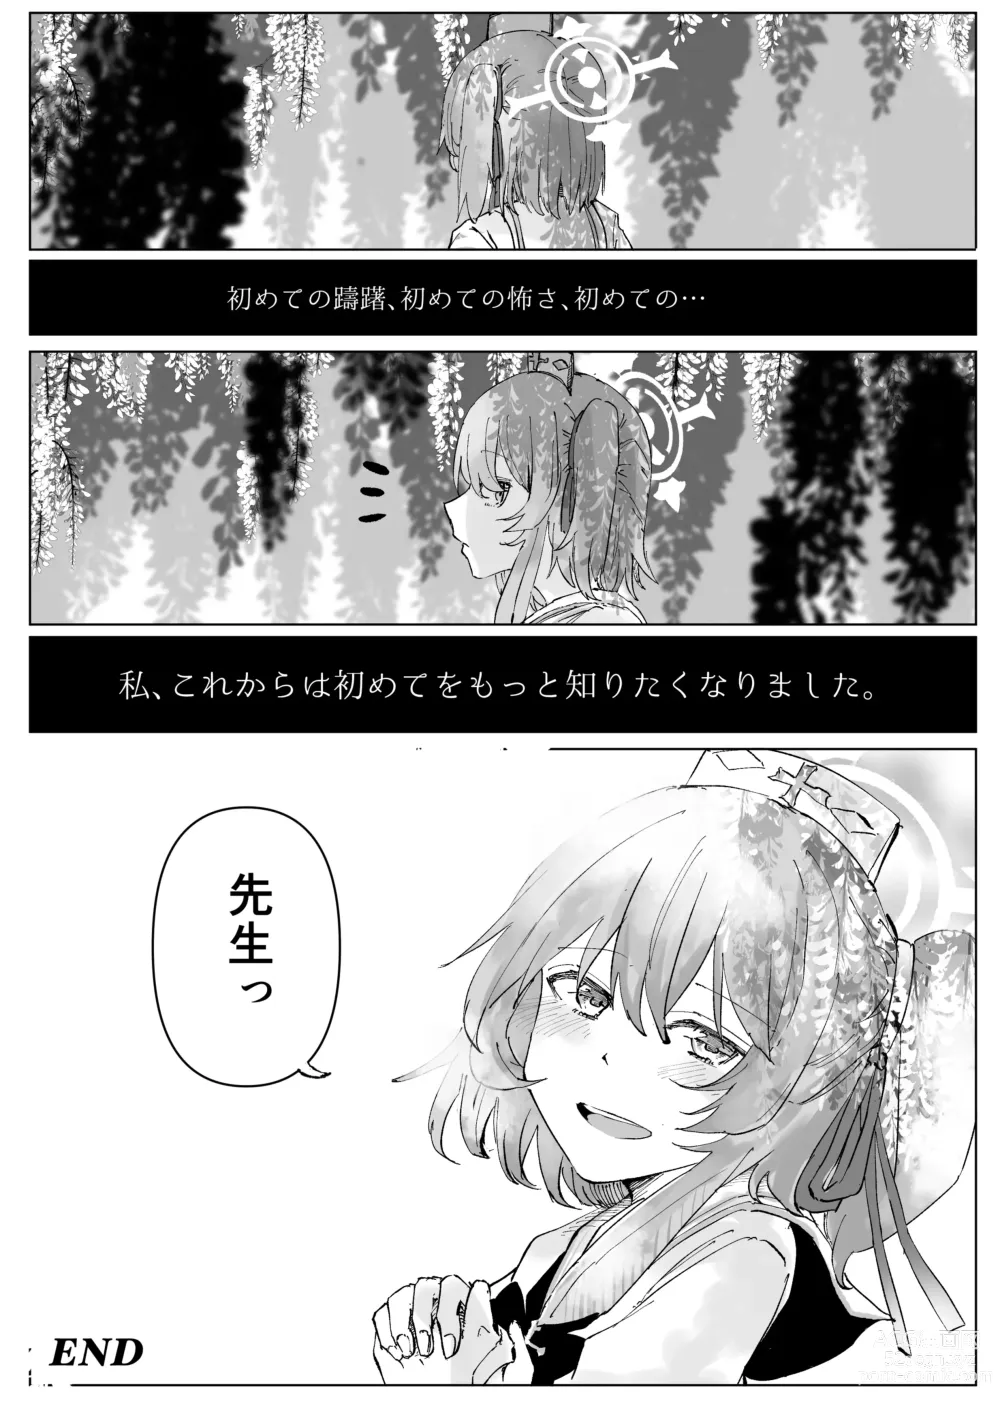 Page 52 of doujinshi Fujiyoi